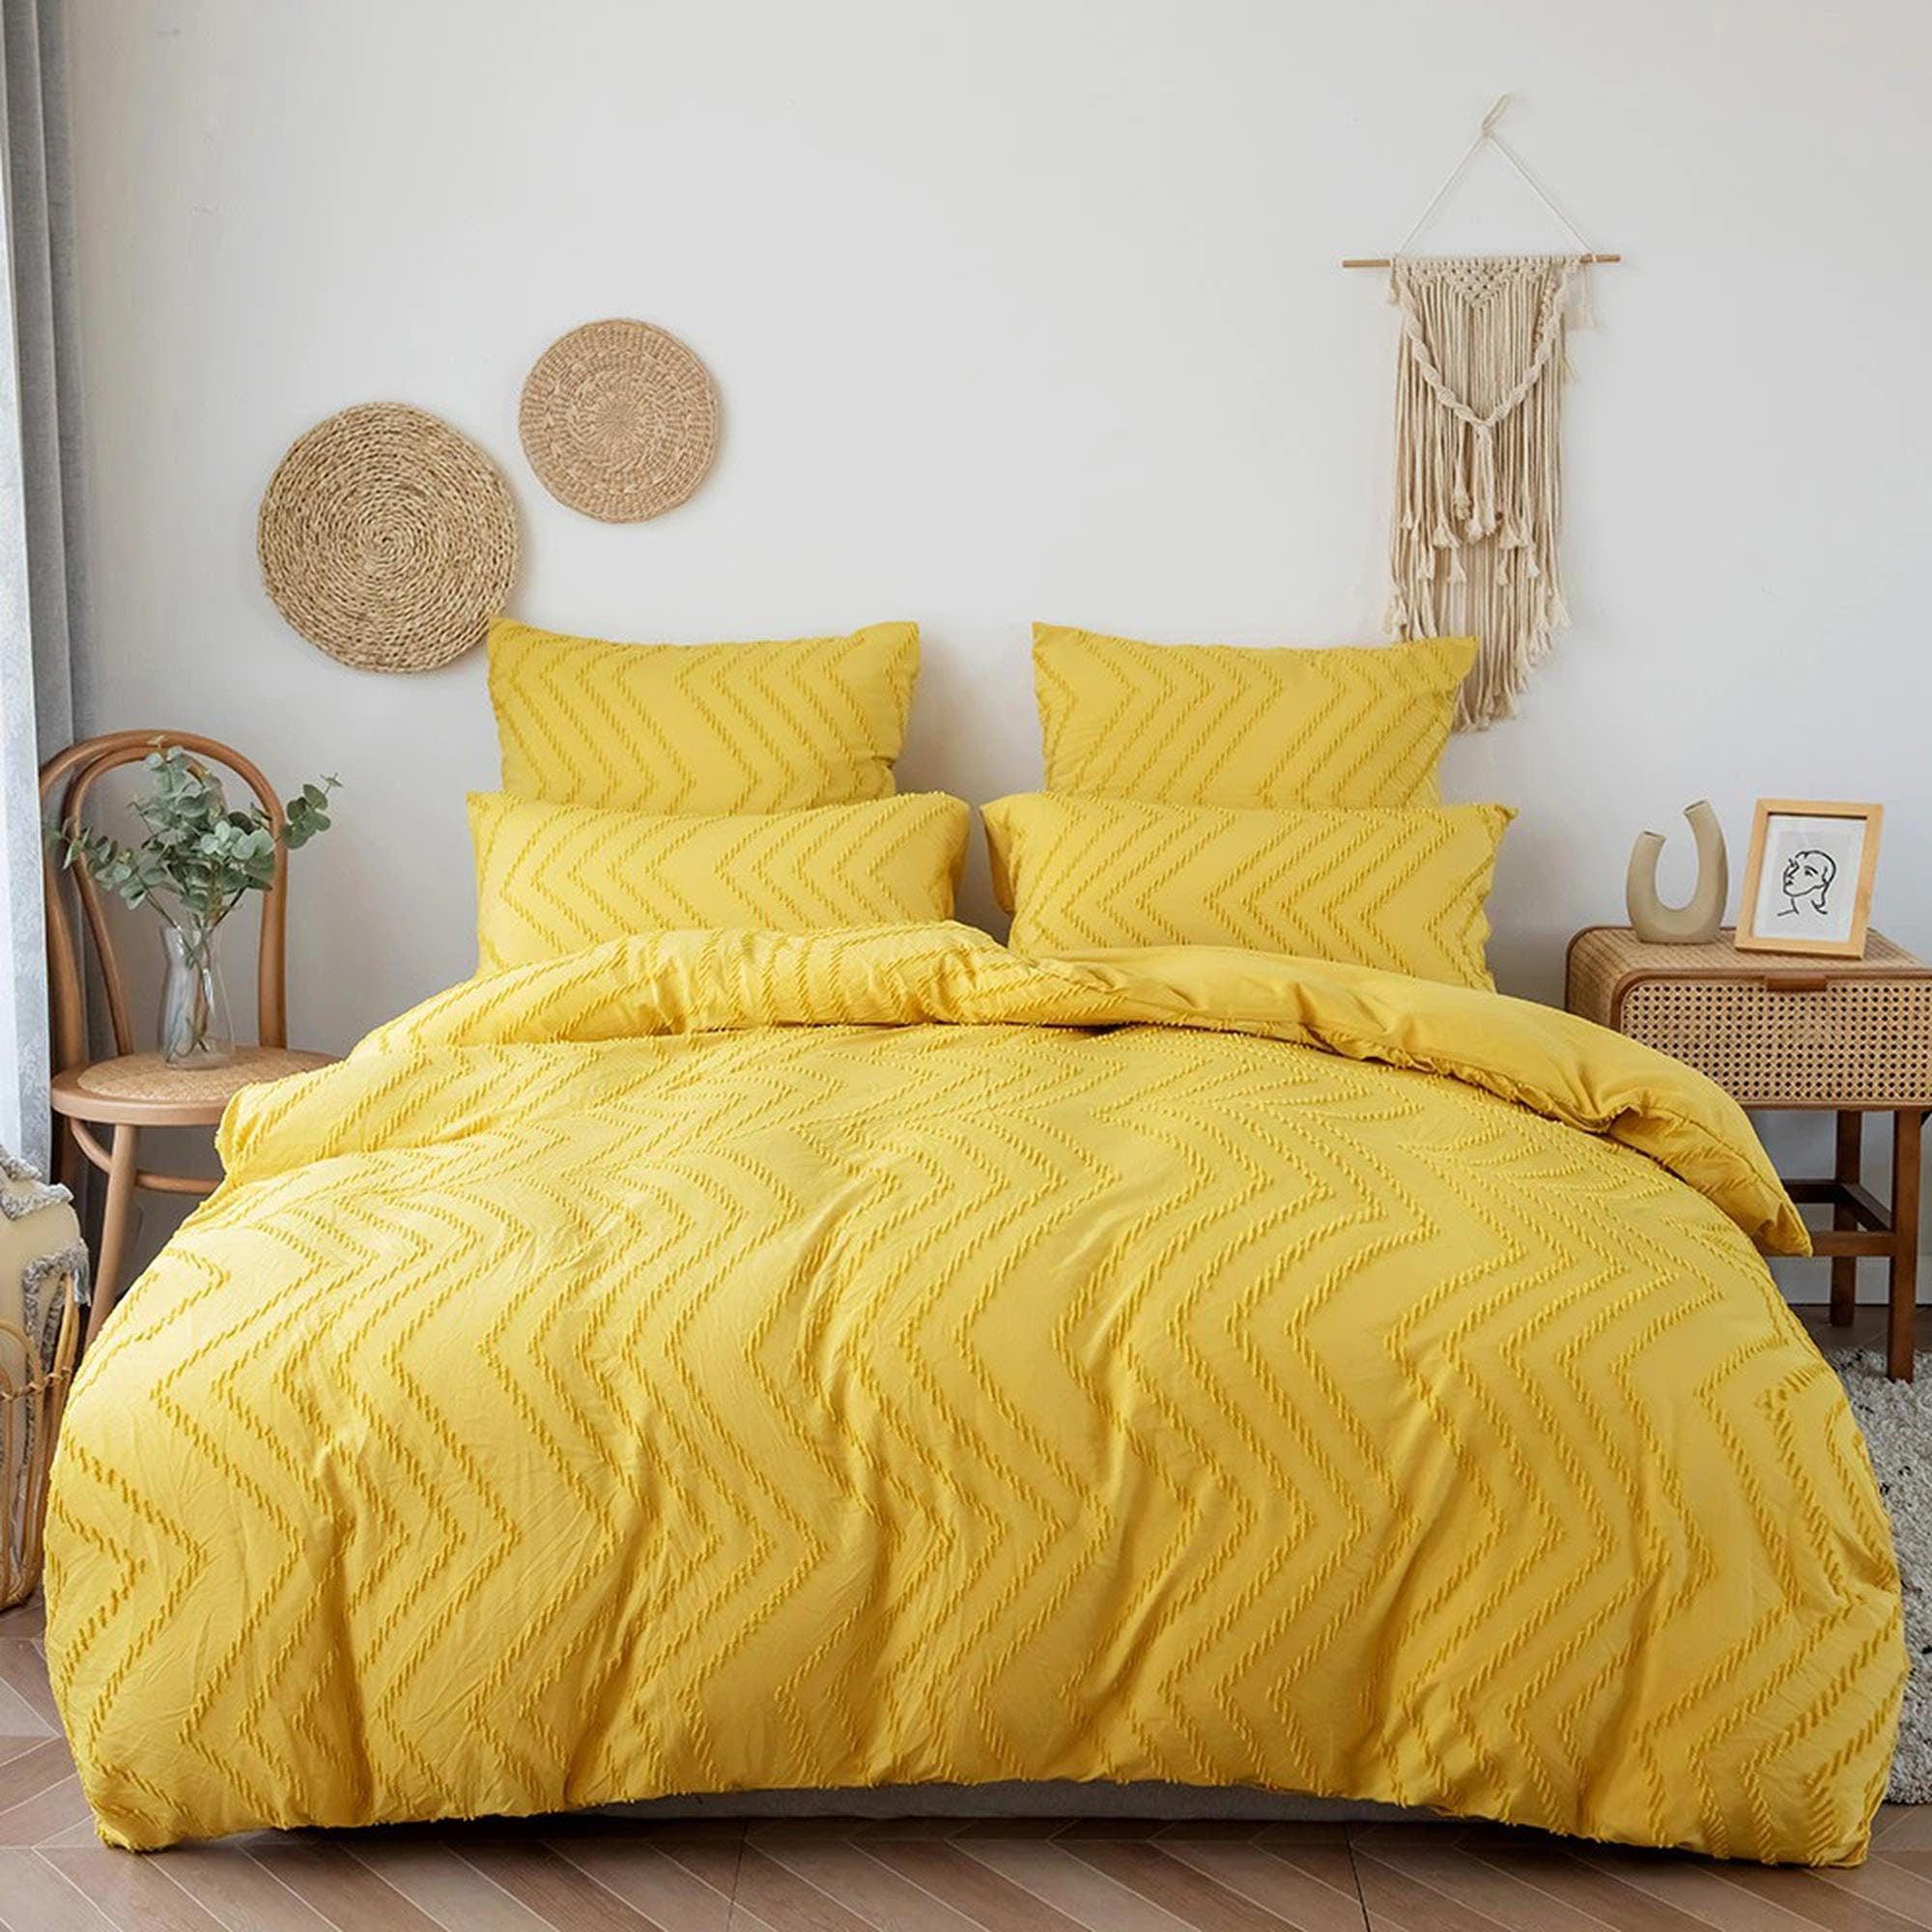 daintyduvet Yellow Tufted Bed, Chevron Chenille Duvet Cover Set, Pom Pom Quilt, Boho Bed Cover, Shabby Chic Bedding, Textured Duvet King Queen